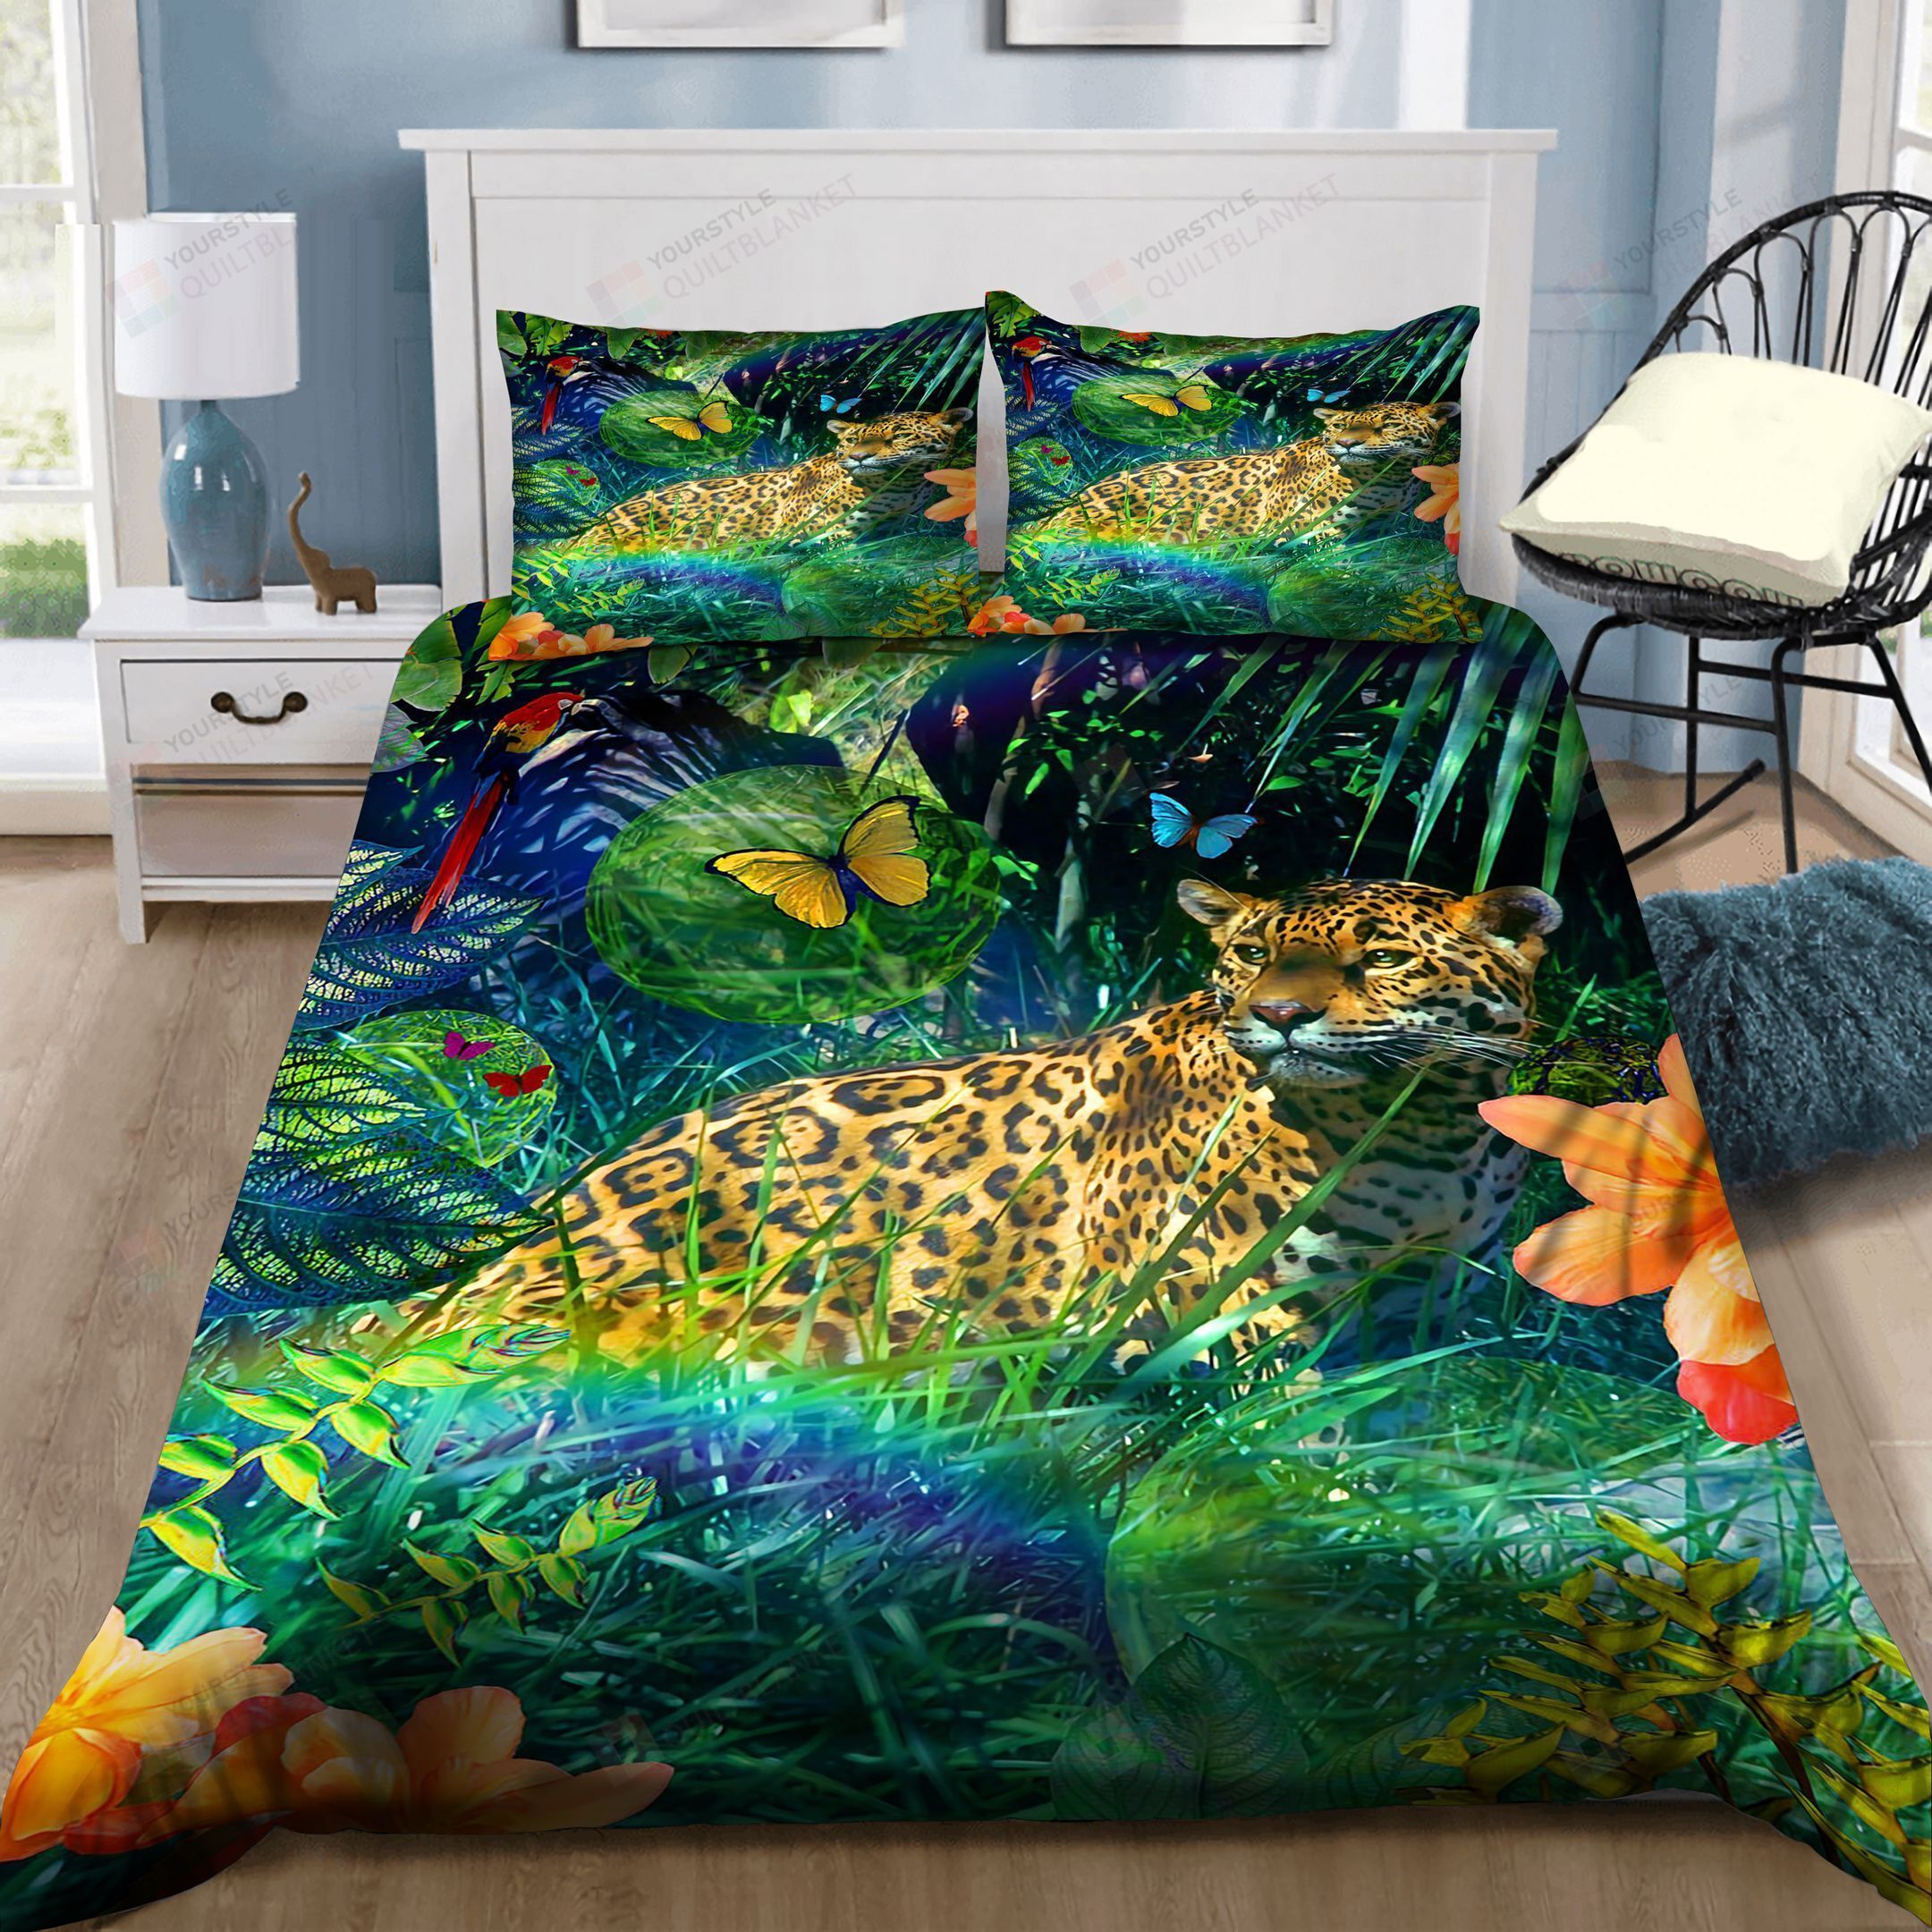 Jaguar Bedding Set Bed Sheets Spread Comforter Duvet Cover Bedding Sets